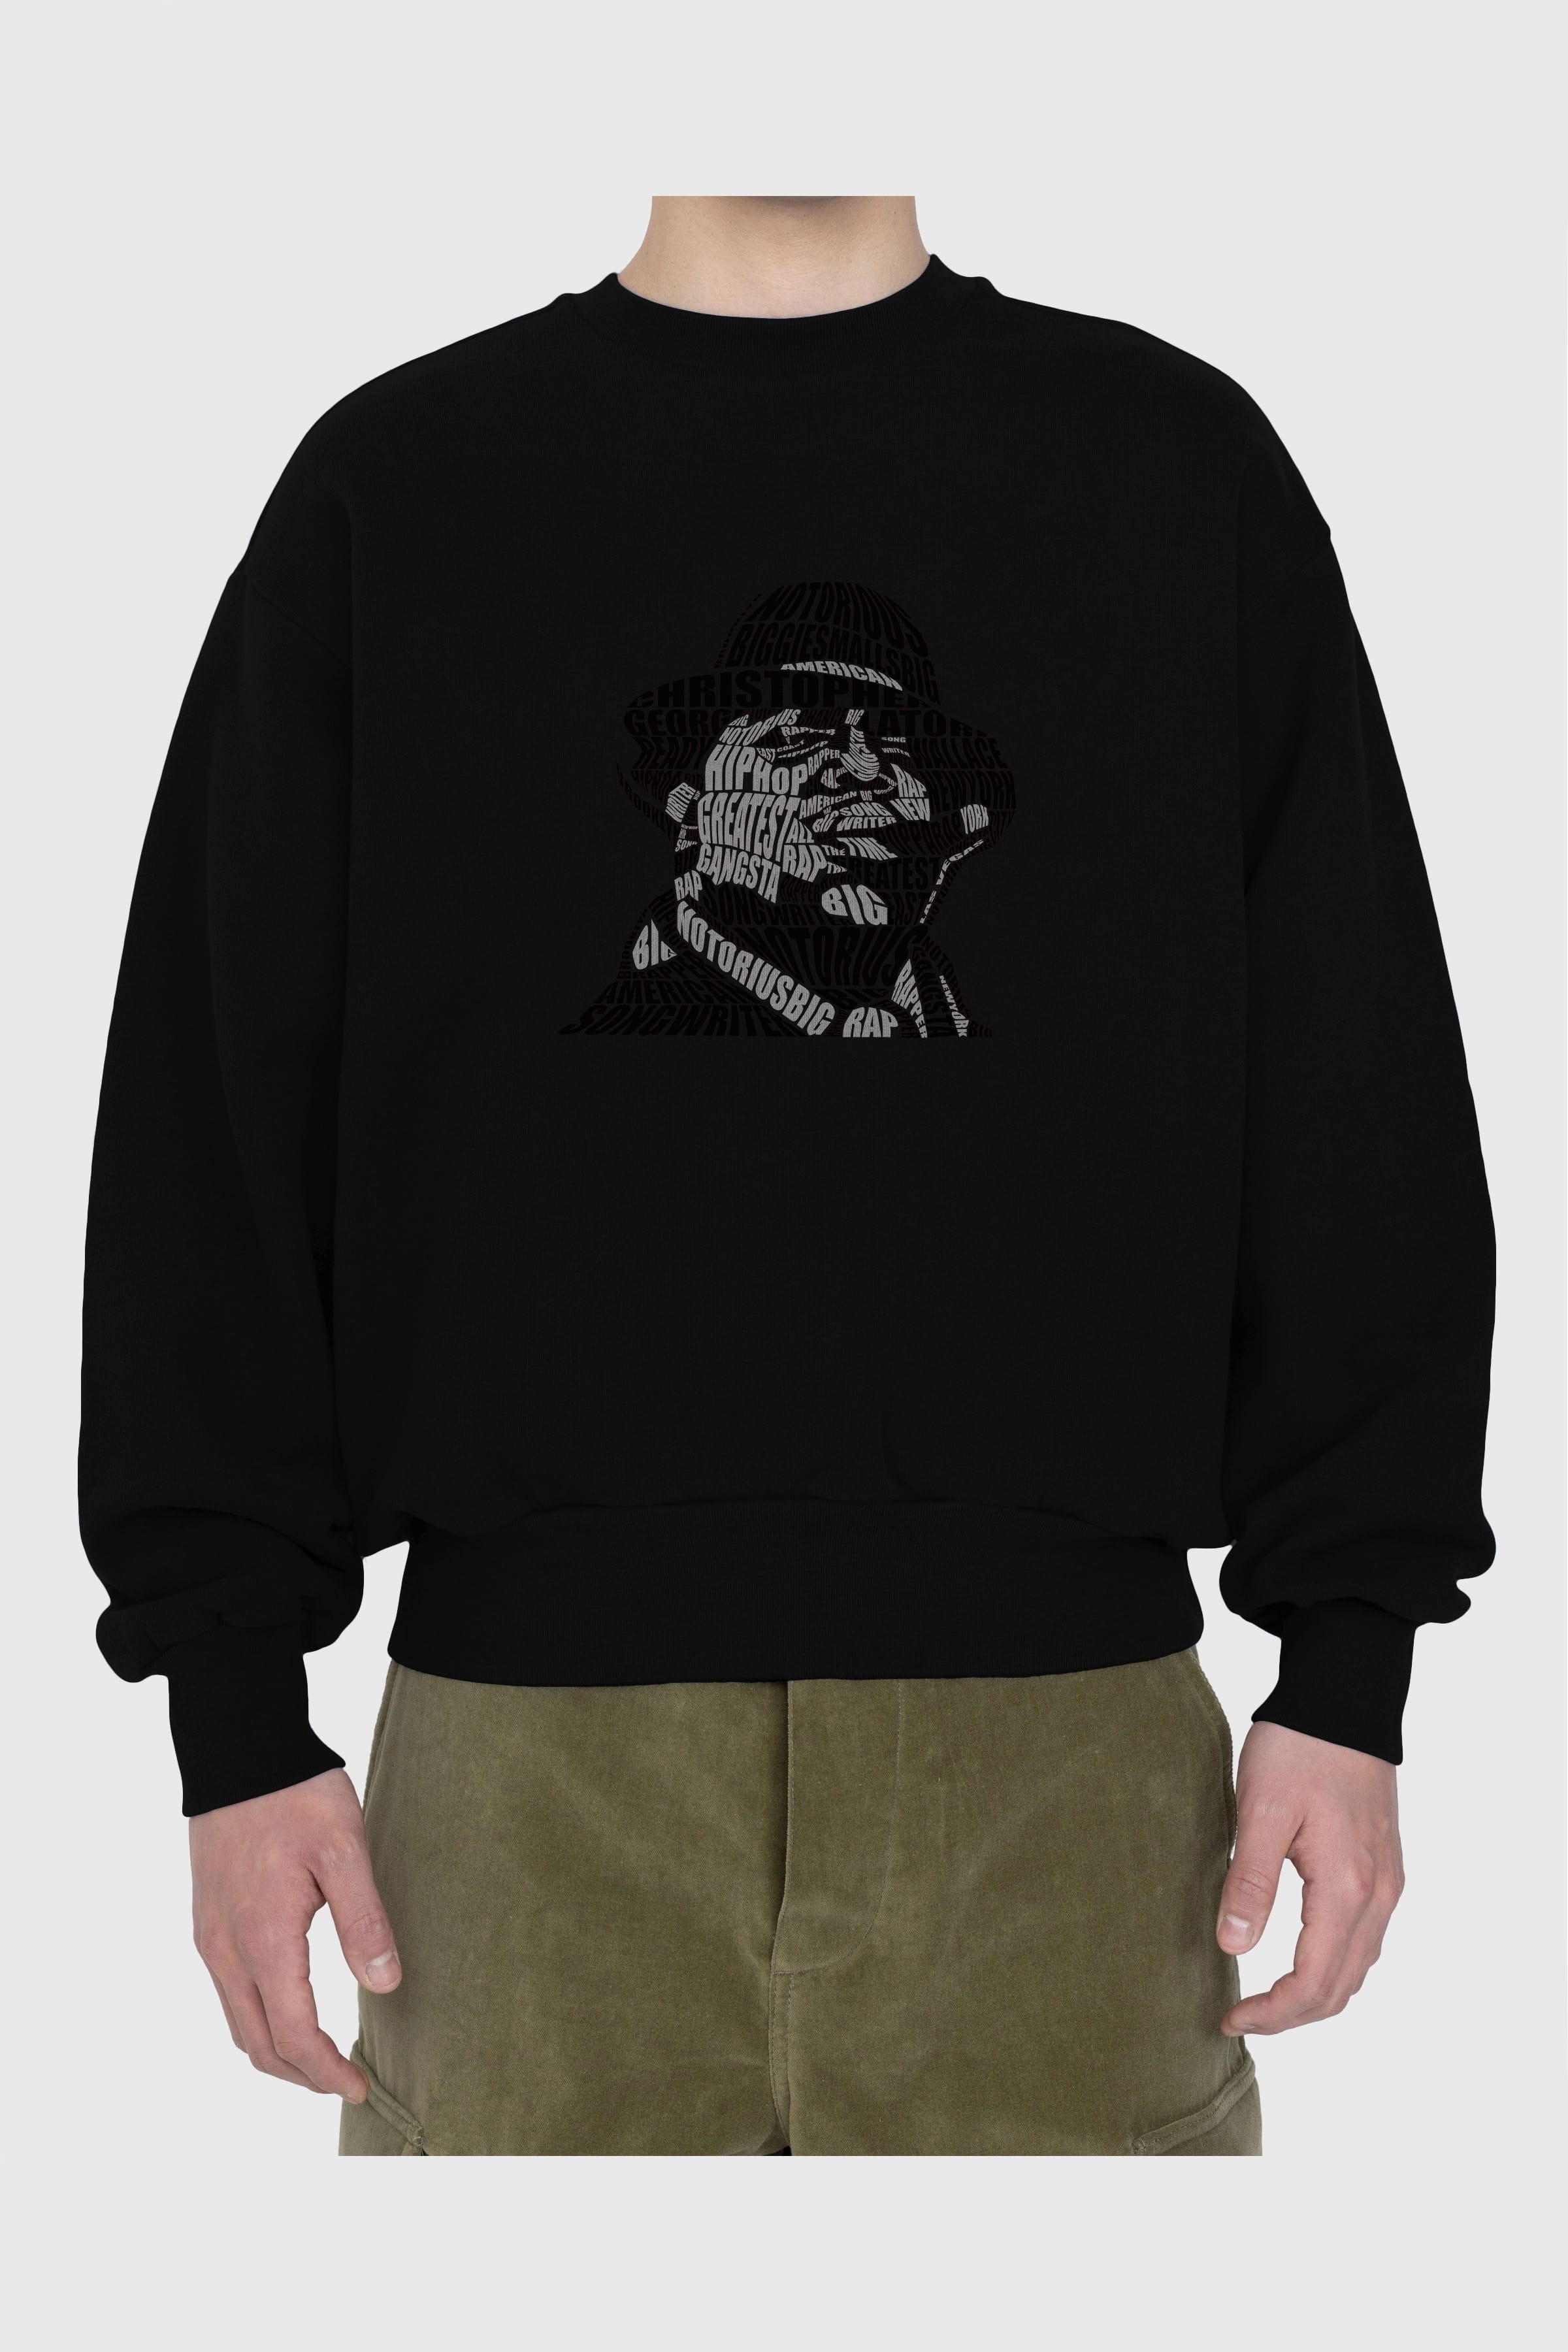 Notorious Big Calligram Ön Baskılı Oversize Sweatshirt Erkek Kadın Unisex